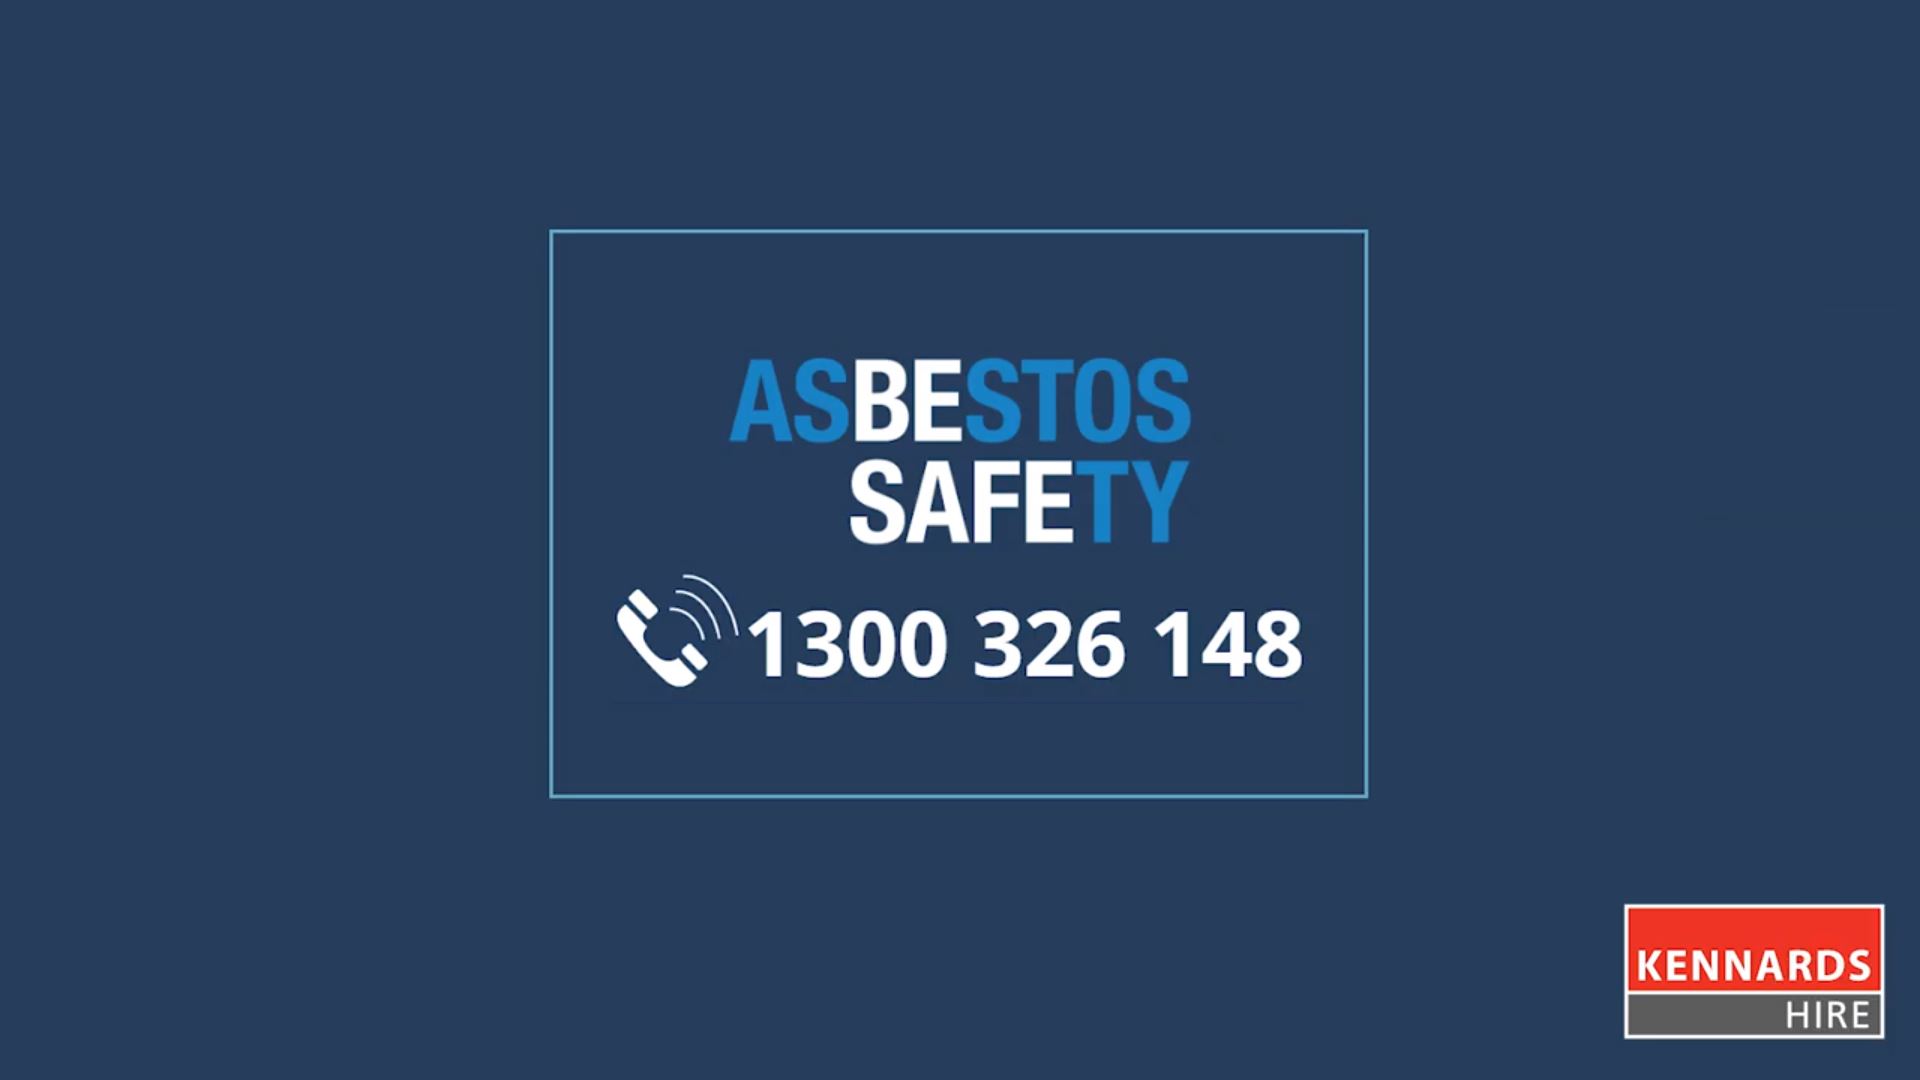 Safety precautions around Asbestos